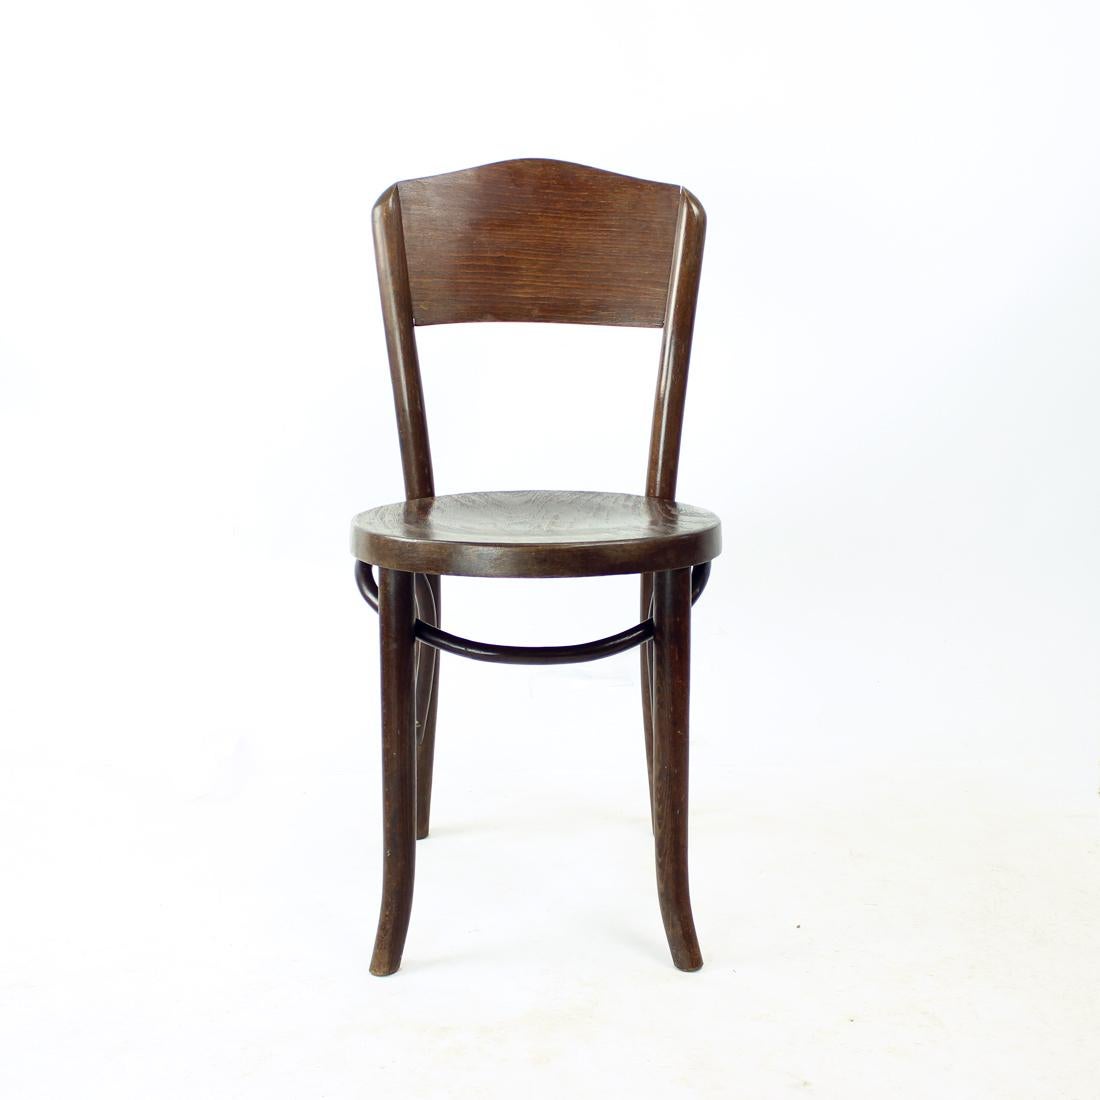 Magnifique chaise vintage conçue par Thonet. Les détails et la construction en bois courbé font de cette pièce un objet intemporel. Siège et dossier en contreplaqué. Bois de chêne puissant. La chaise a été partiellement restaurée afin de s'assurer